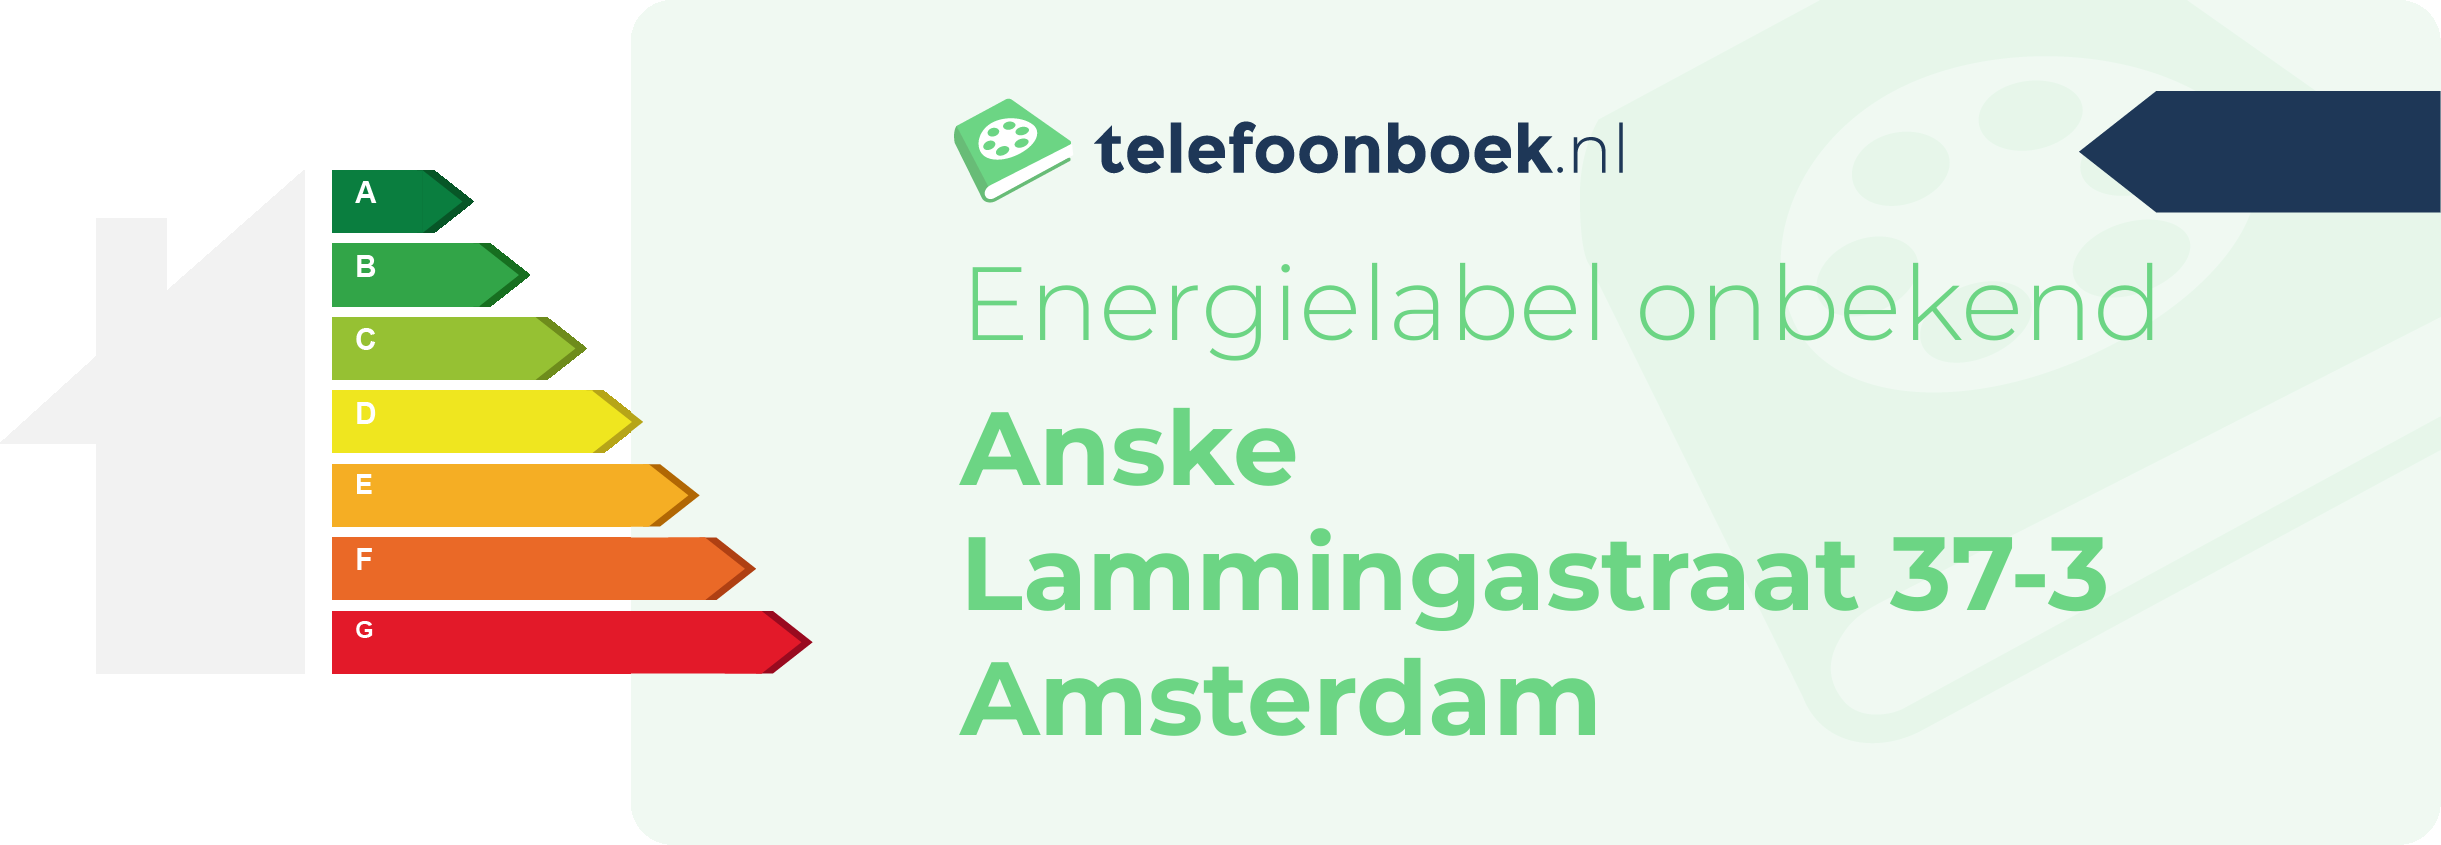 Energielabel Anske Lammingastraat 37-3 Amsterdam